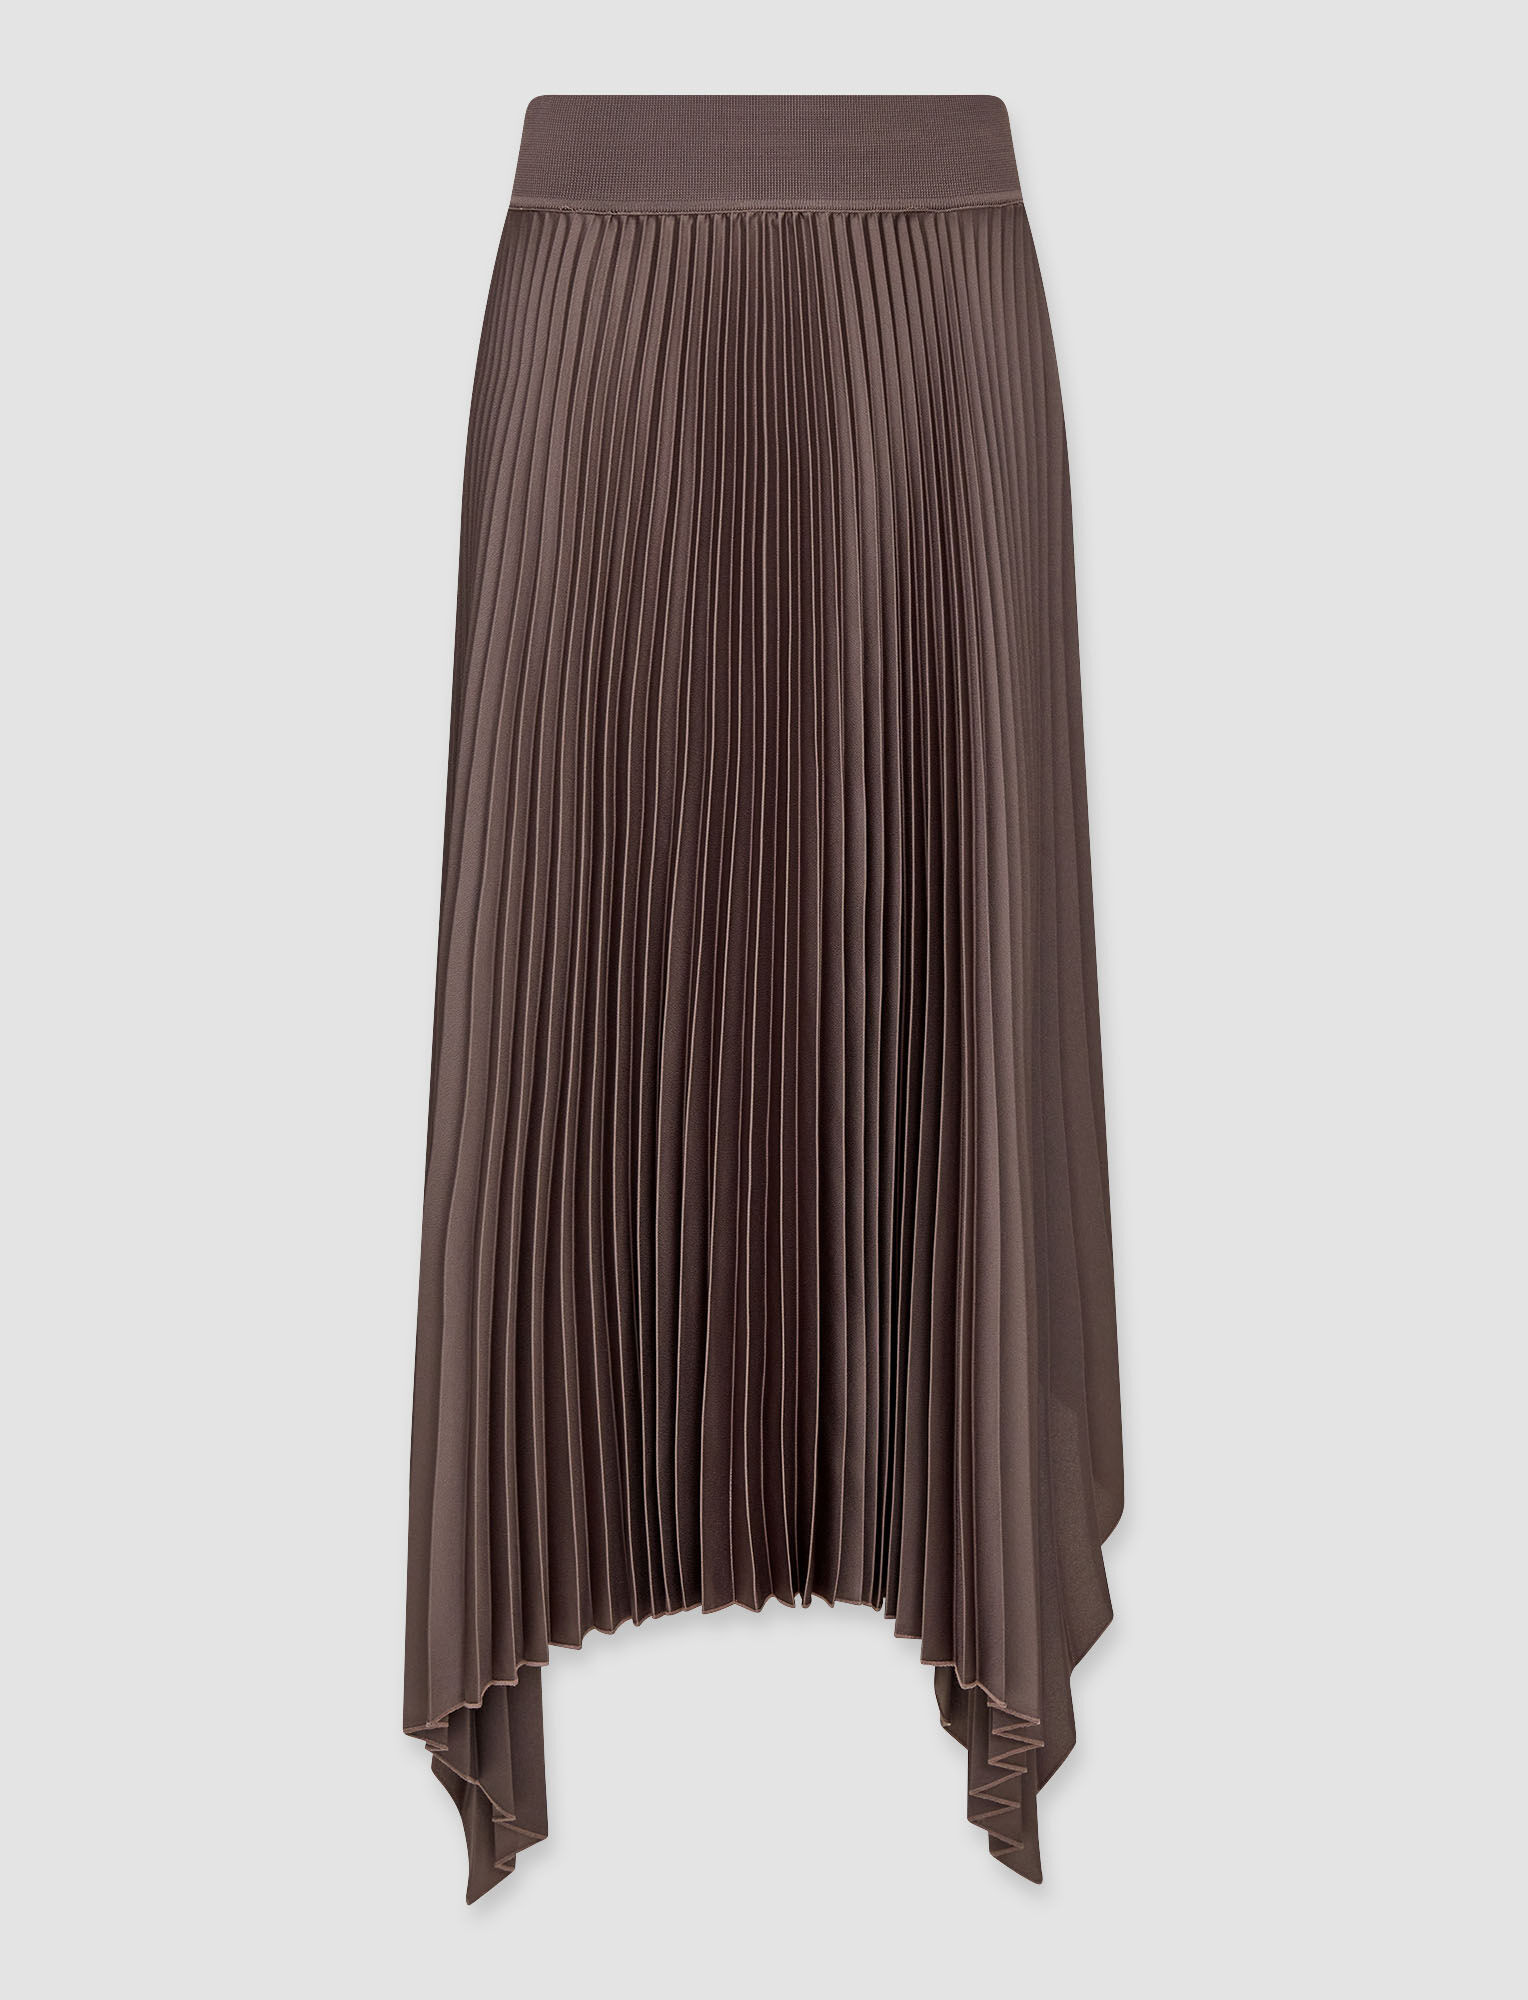 Joseph, Knit Weave Plisse Ade Skirt – Shorter Length, in Truffle